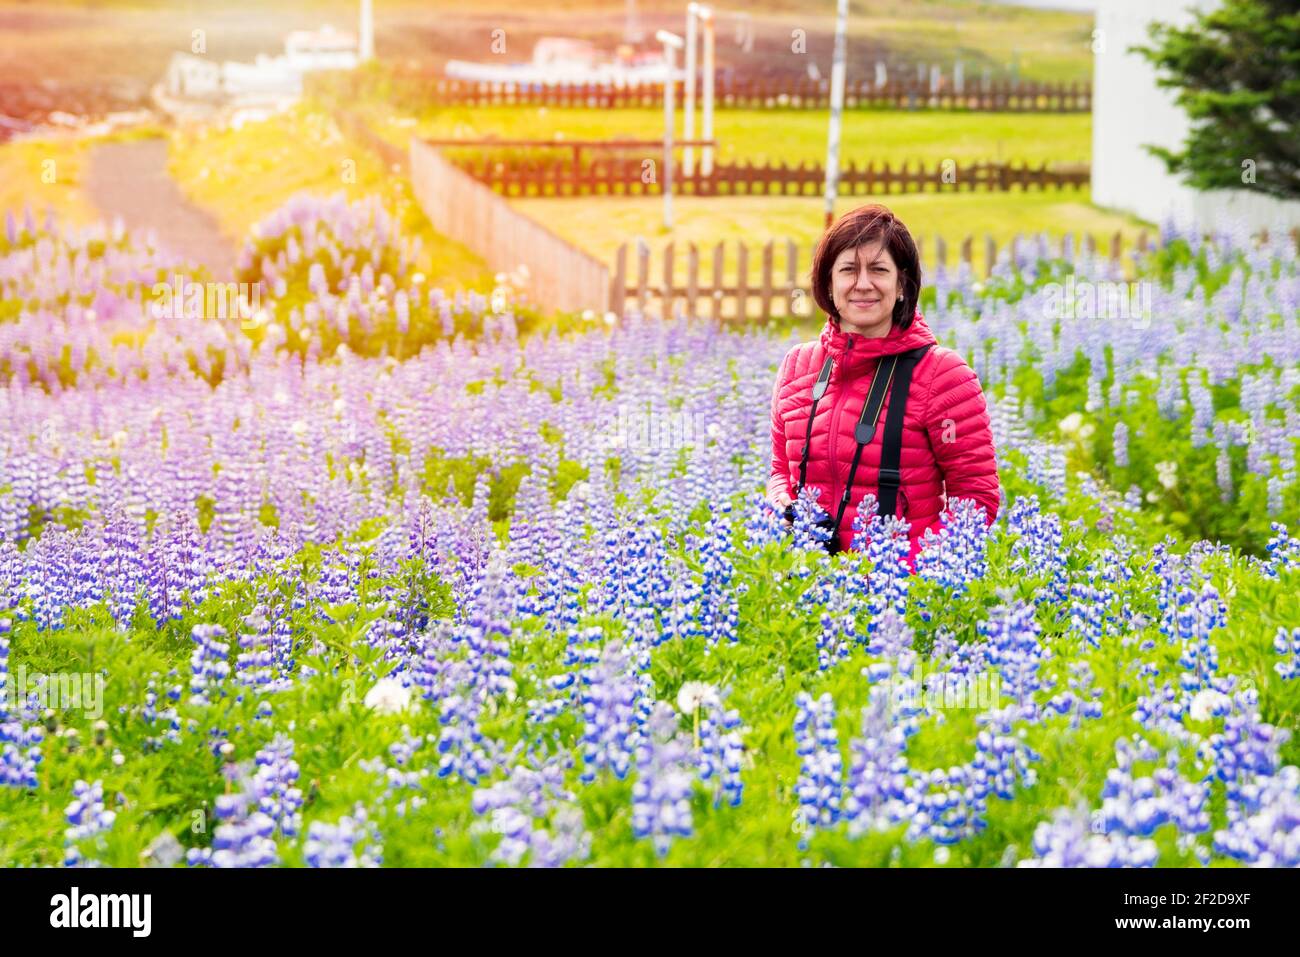 Lächelnde Frau Tourist mit einer Kamera in einem Feld von Lupine Wildblumen in voller Blüte an einem sonnigen Sommertag Stockfoto